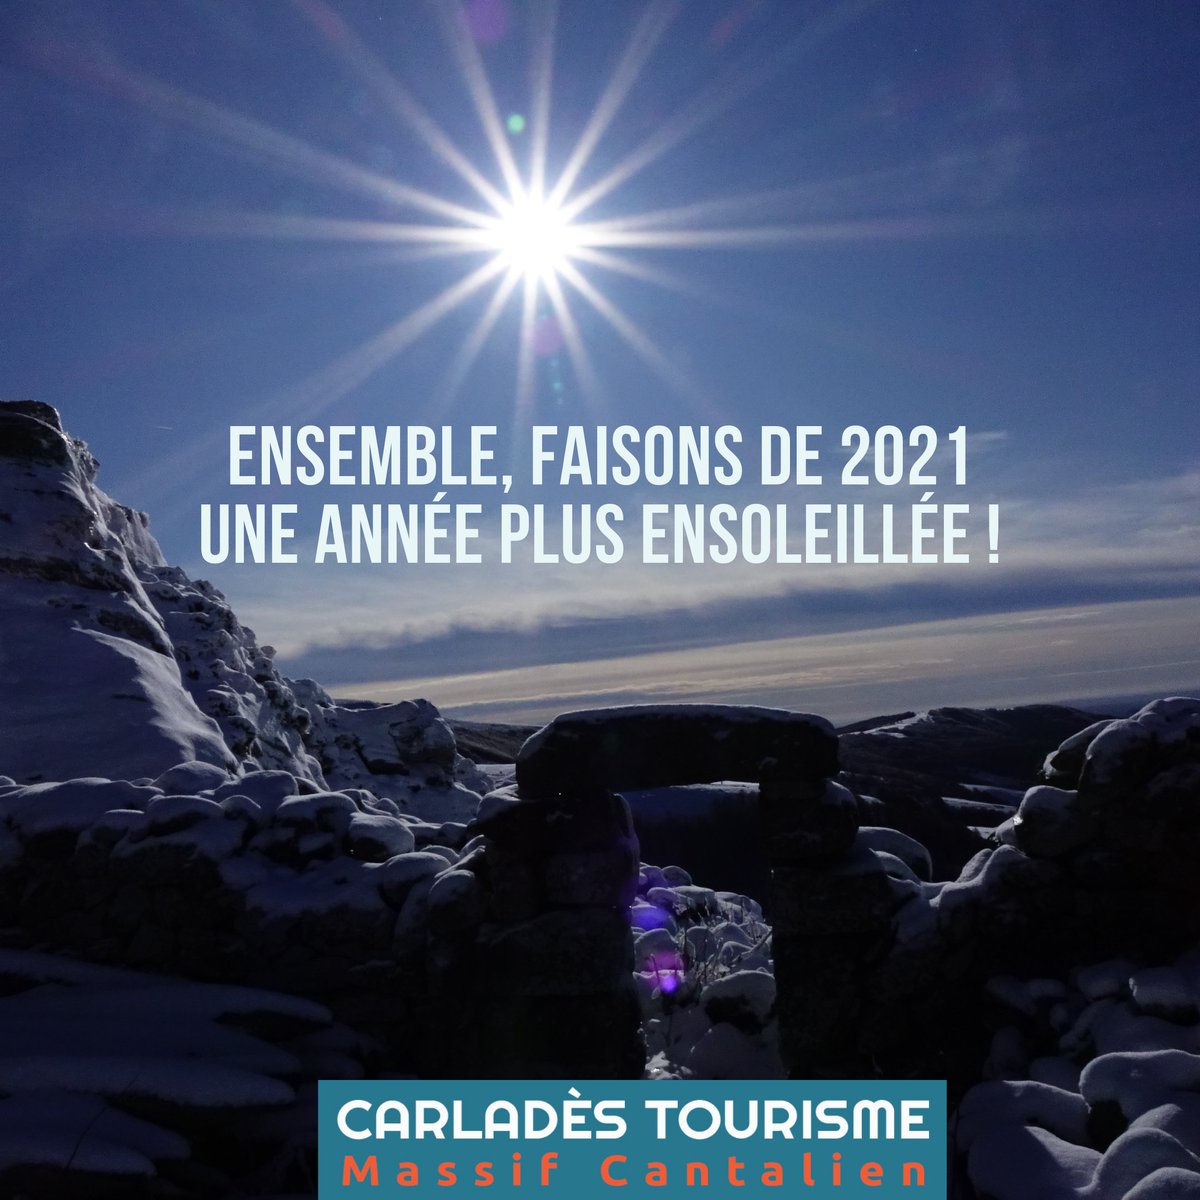 Toute l'équipe de l'Office de Tourisme vous souhaite une bonne année 2021 ! #Welcome2021 #bonneannee2021 #cantal #Auvergne